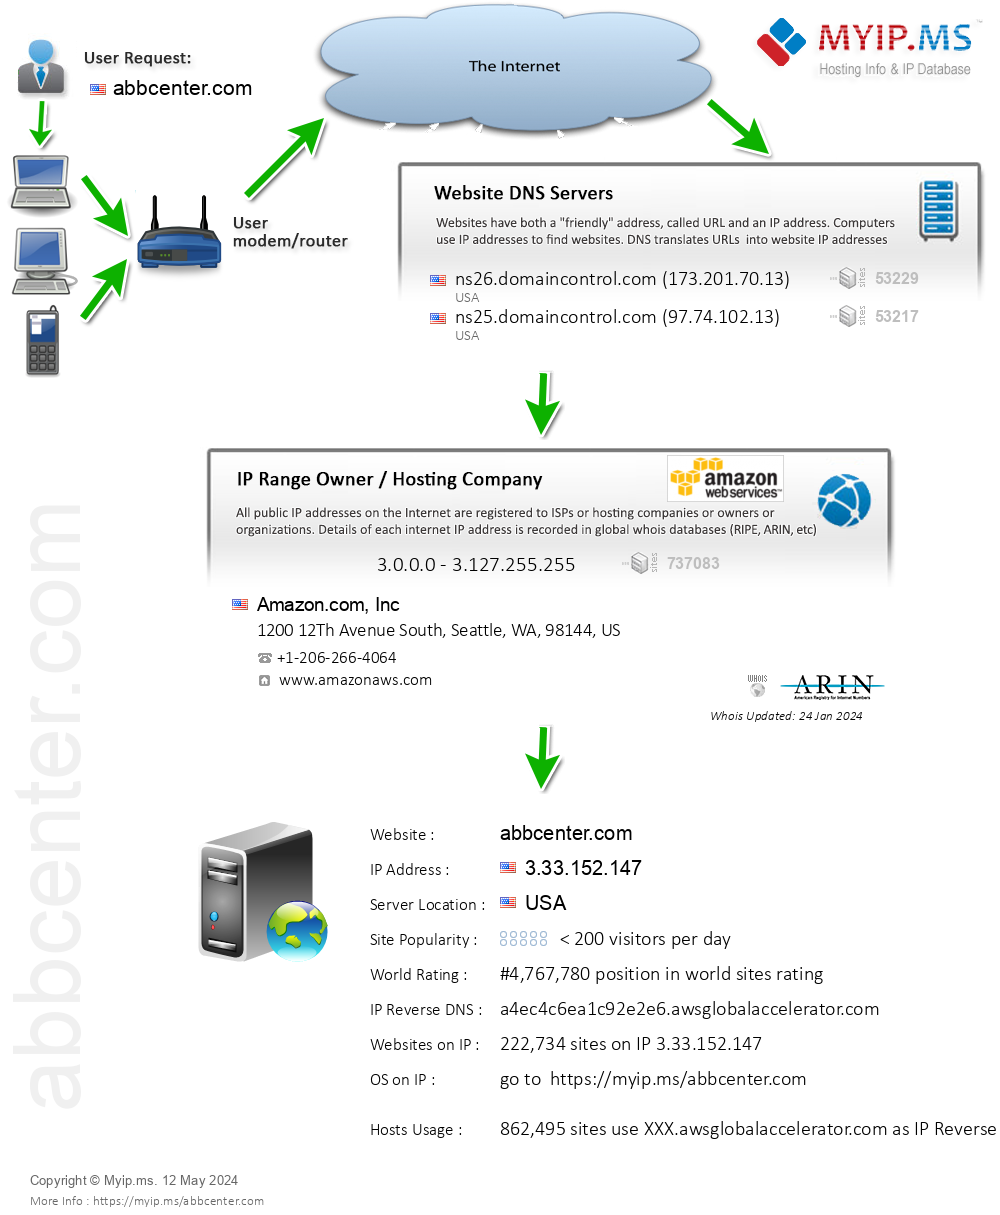 Abbcenter.com - Website Hosting Visual IP Diagram